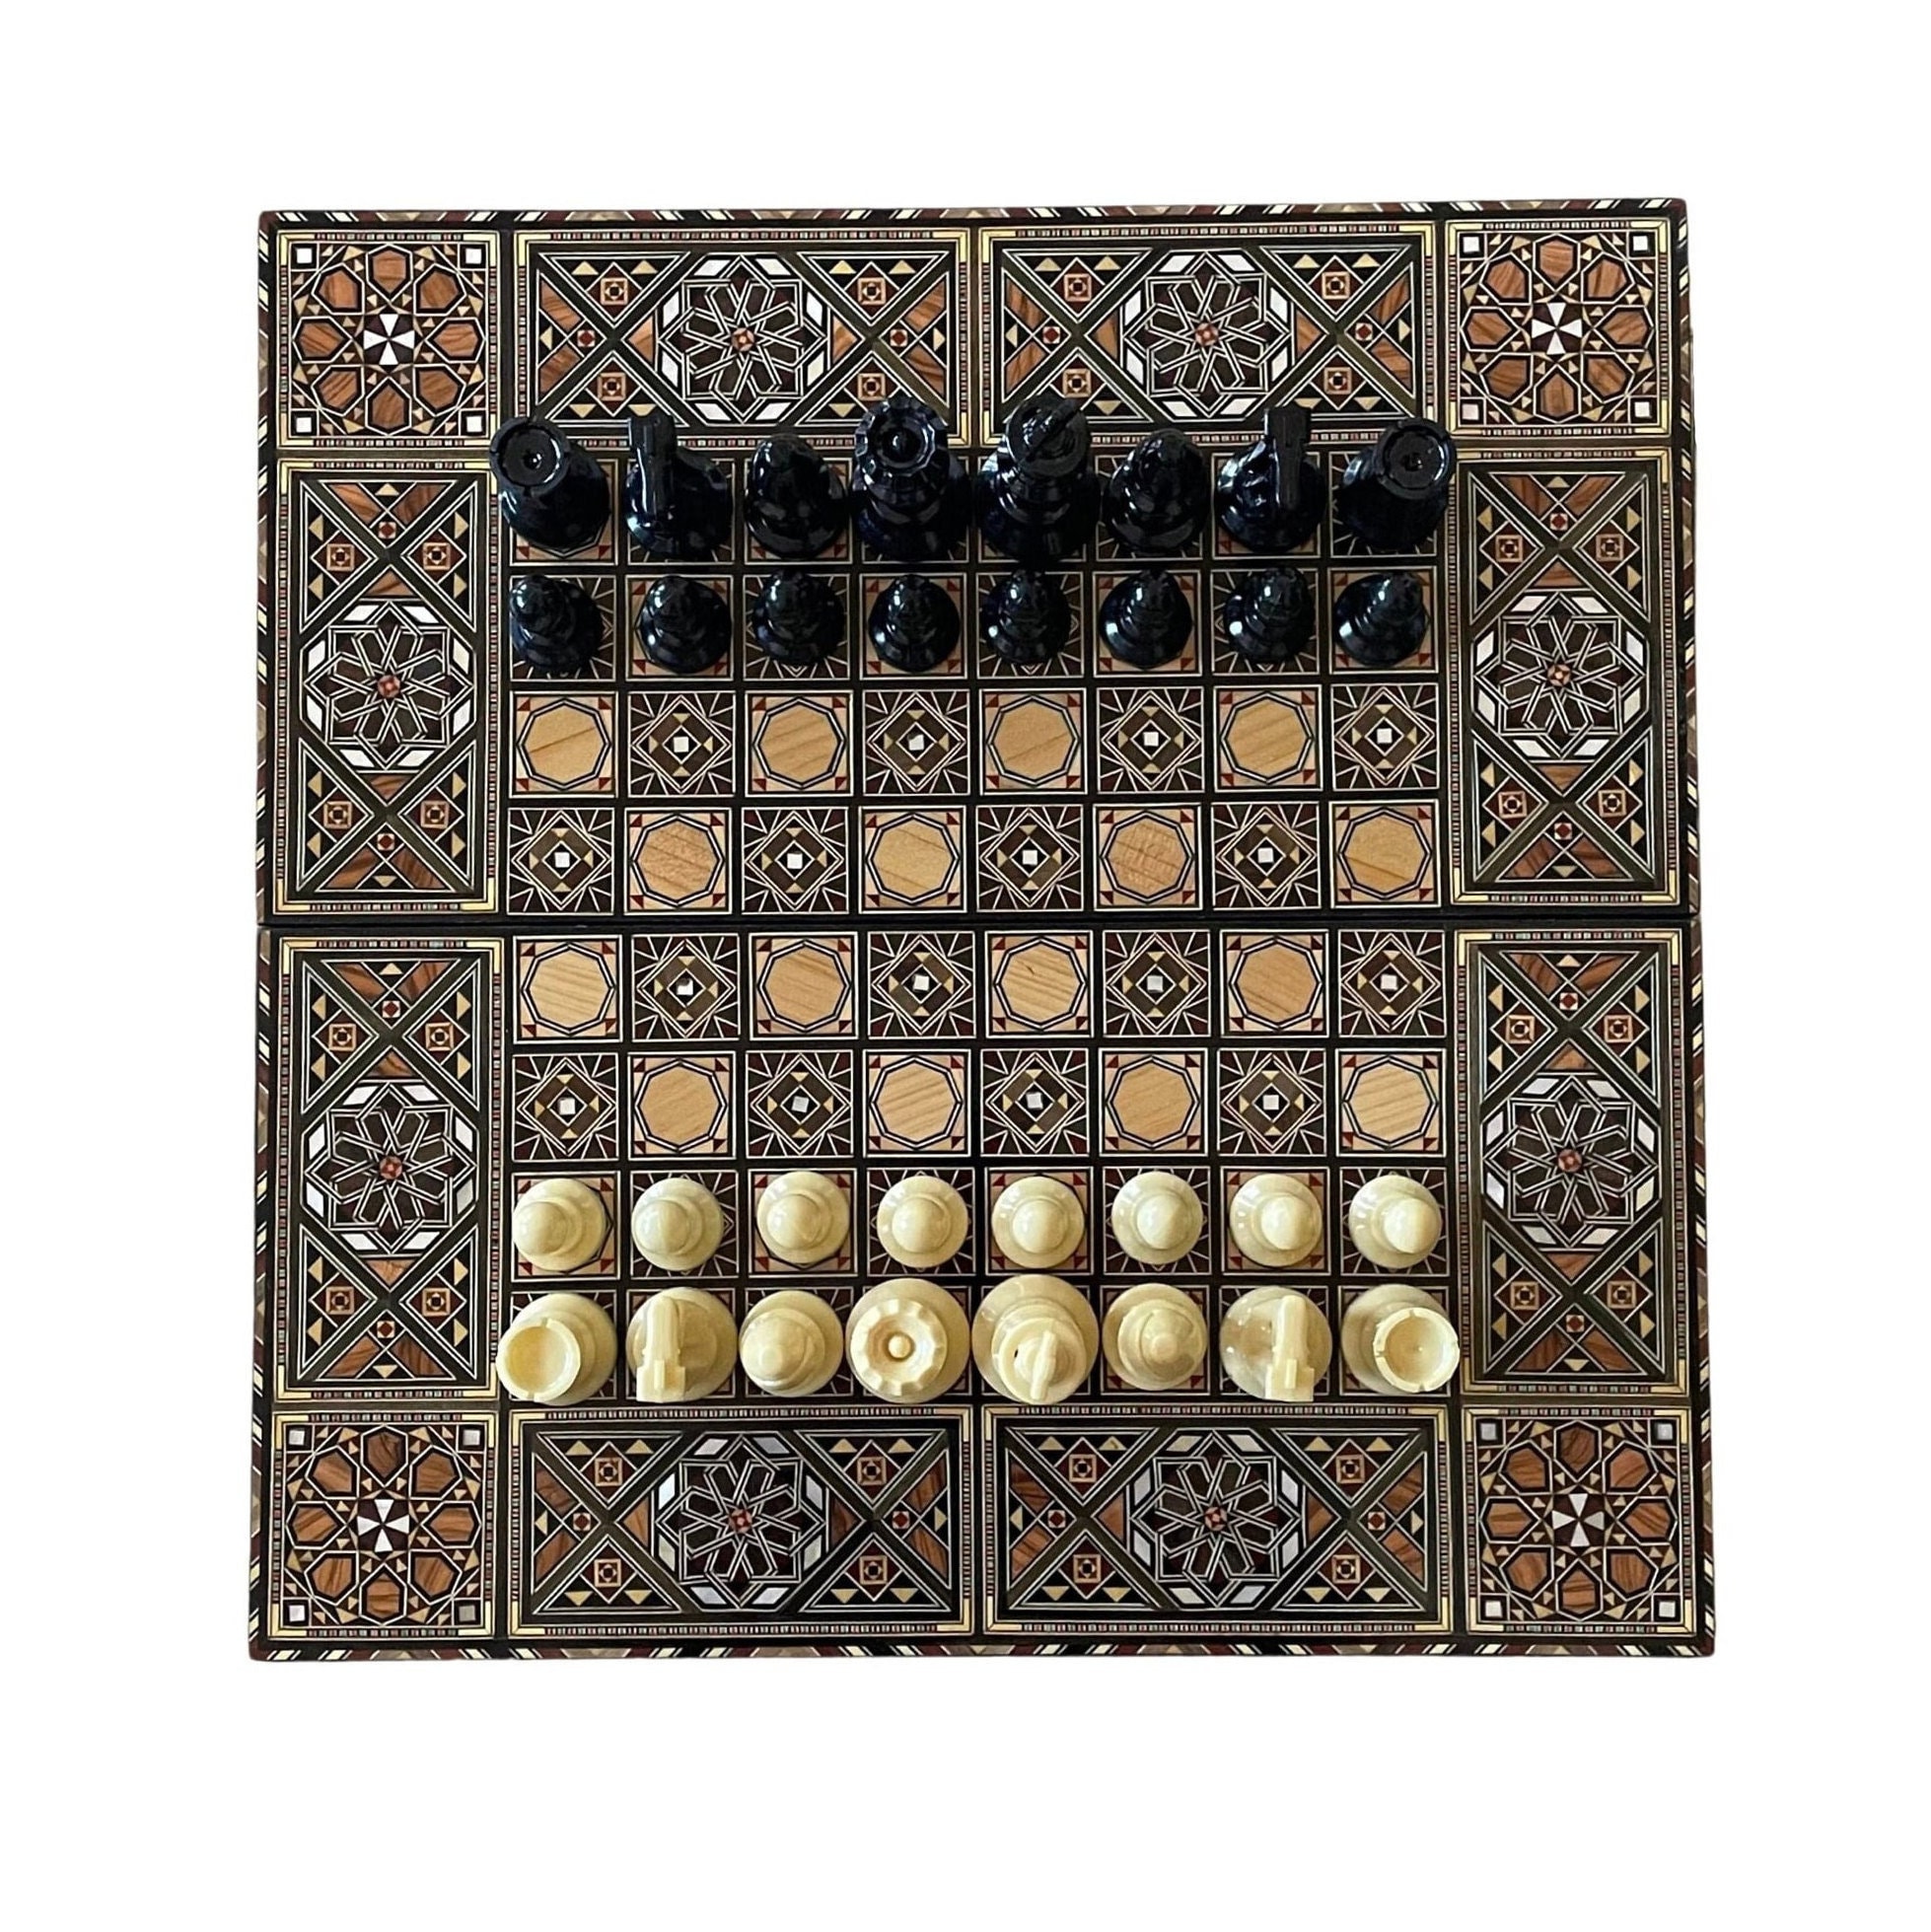 Plateau de jeu Backgammon - ensemble complet - Magnétique - Pliable/pliable  - 32x32cm